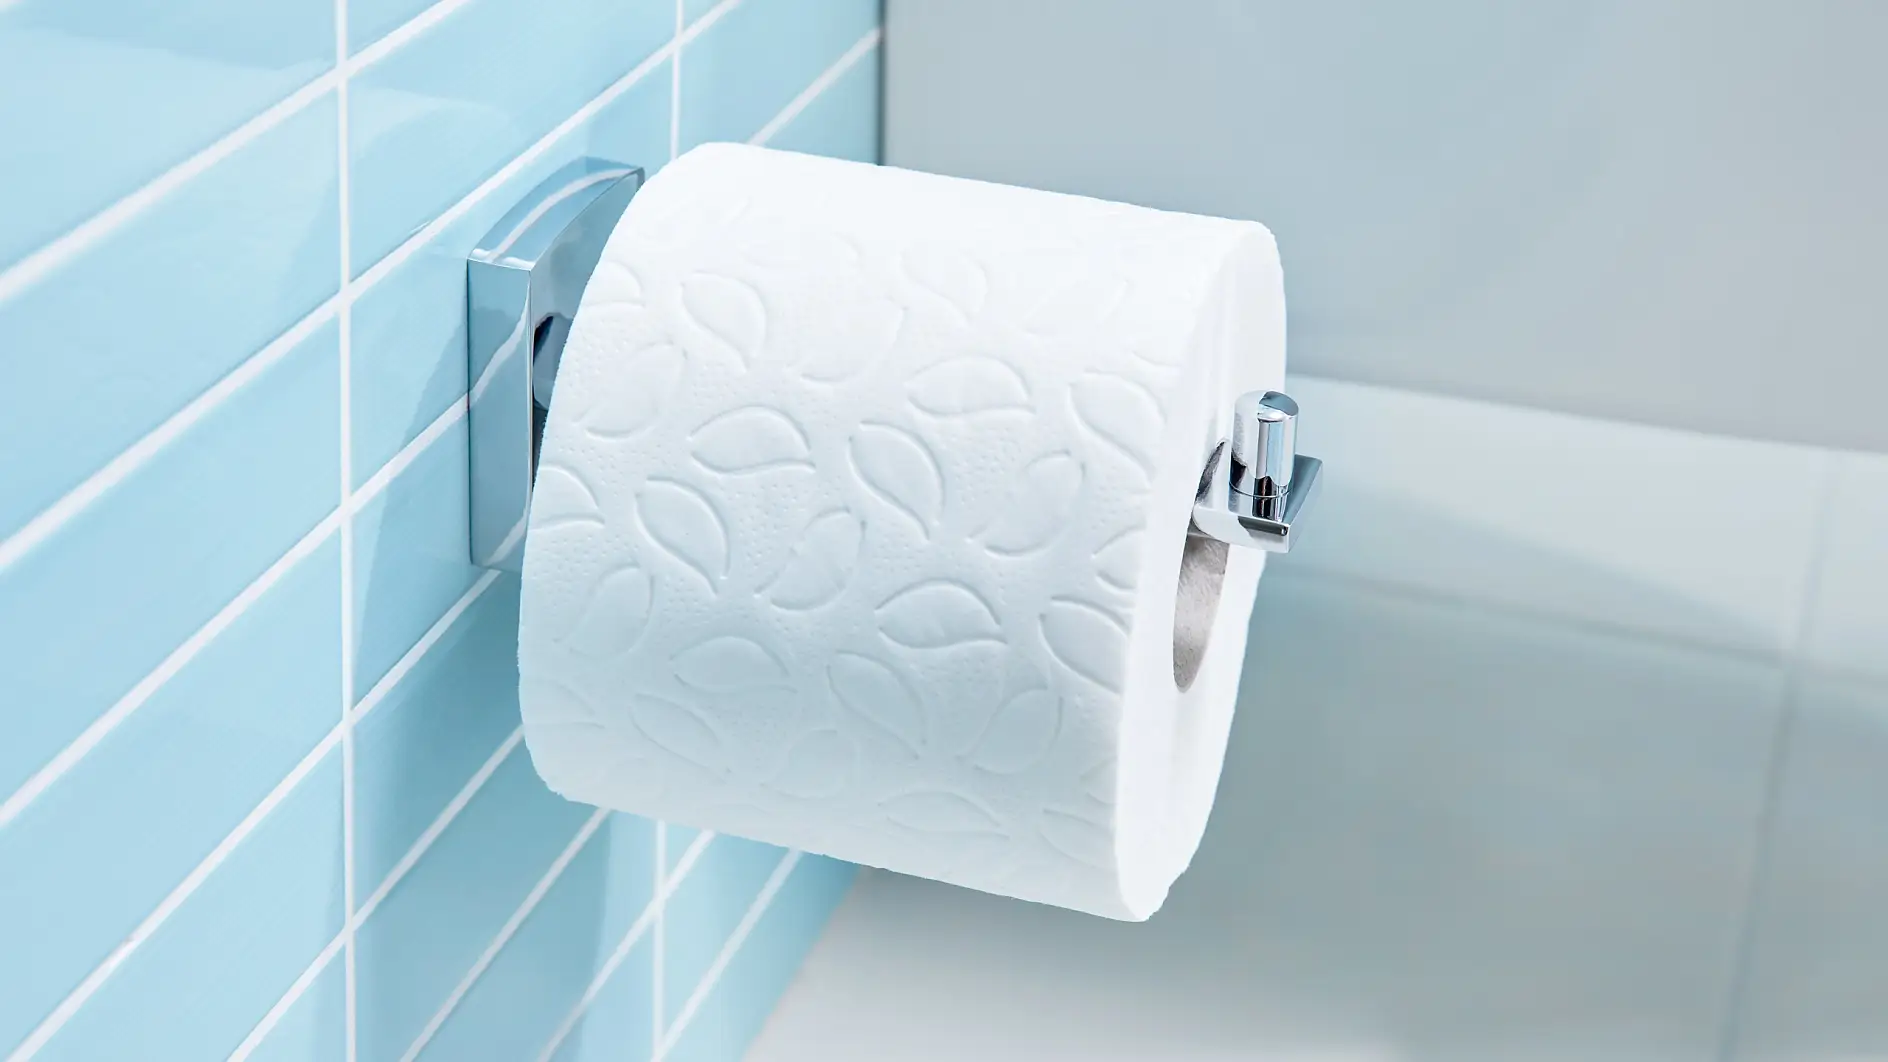 Design semplici per tenere a portata di mano le bobine di carta igienica.